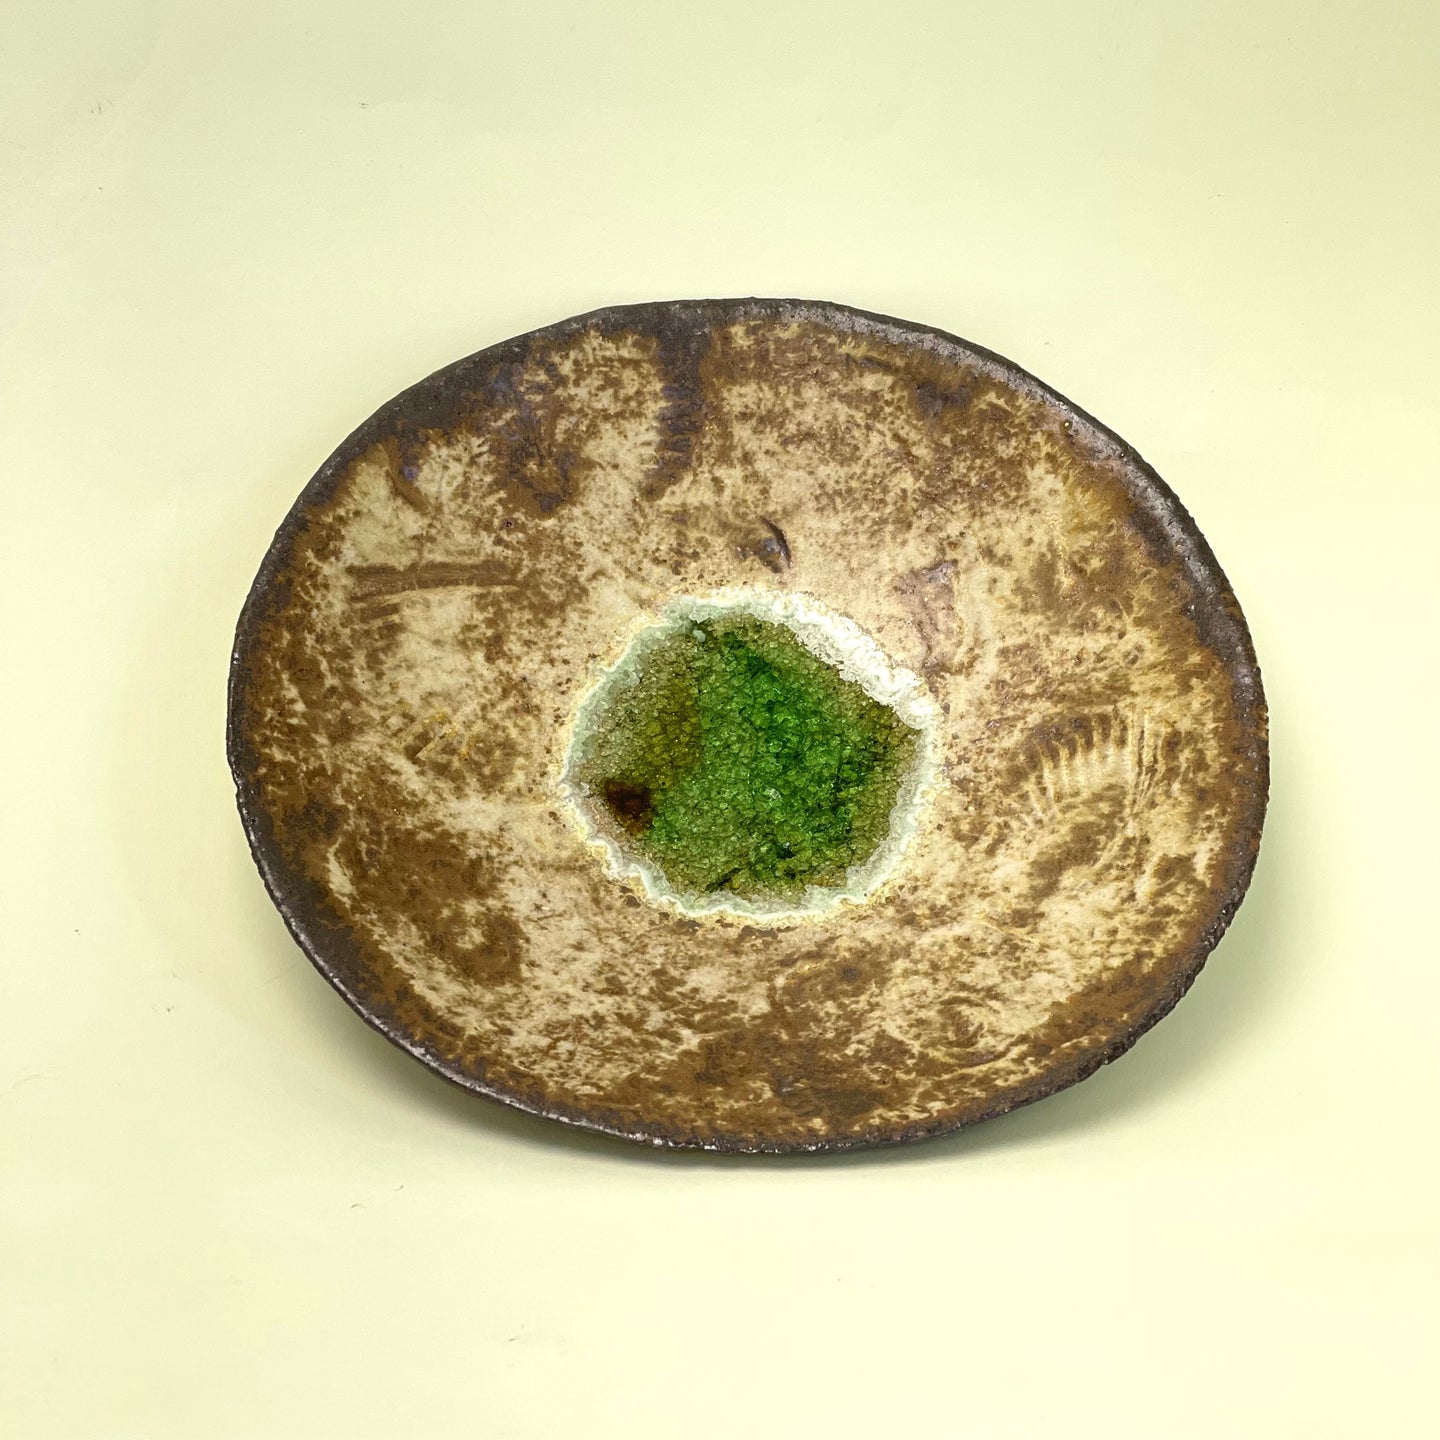 Decorative bowl - sea glass 1